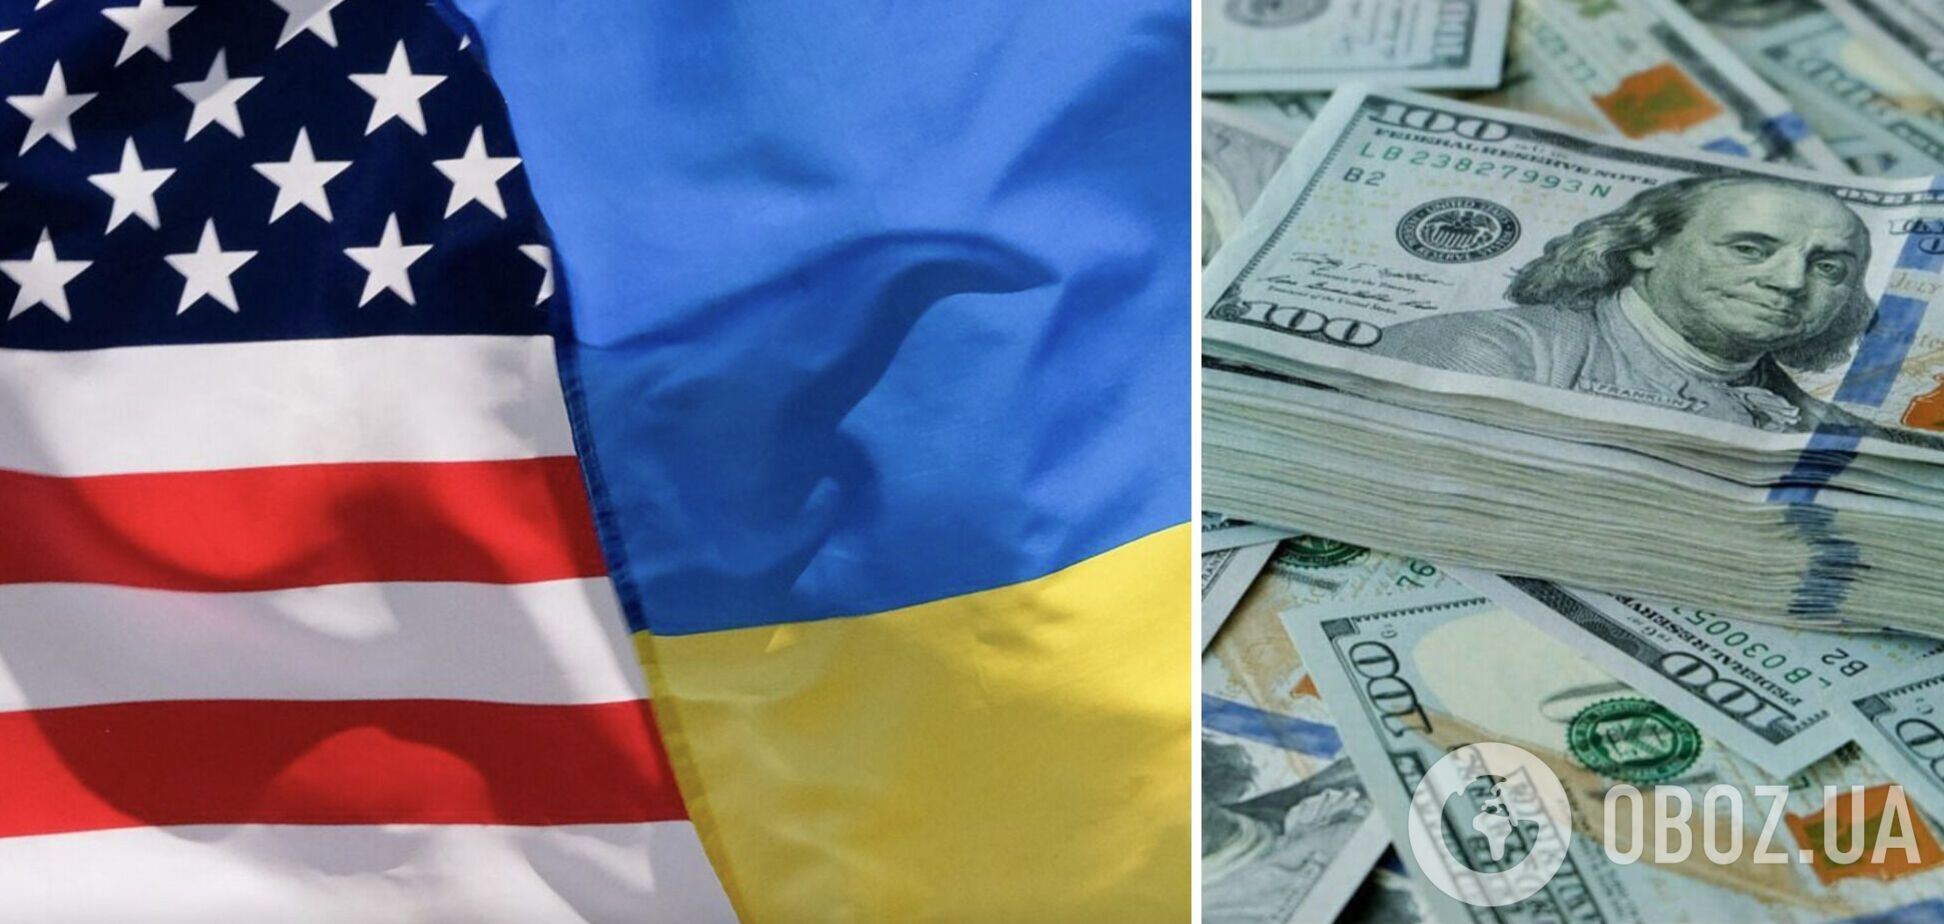 Рішення Конгресу про виділення грошей Україні. Що воно насправді означає для нас?